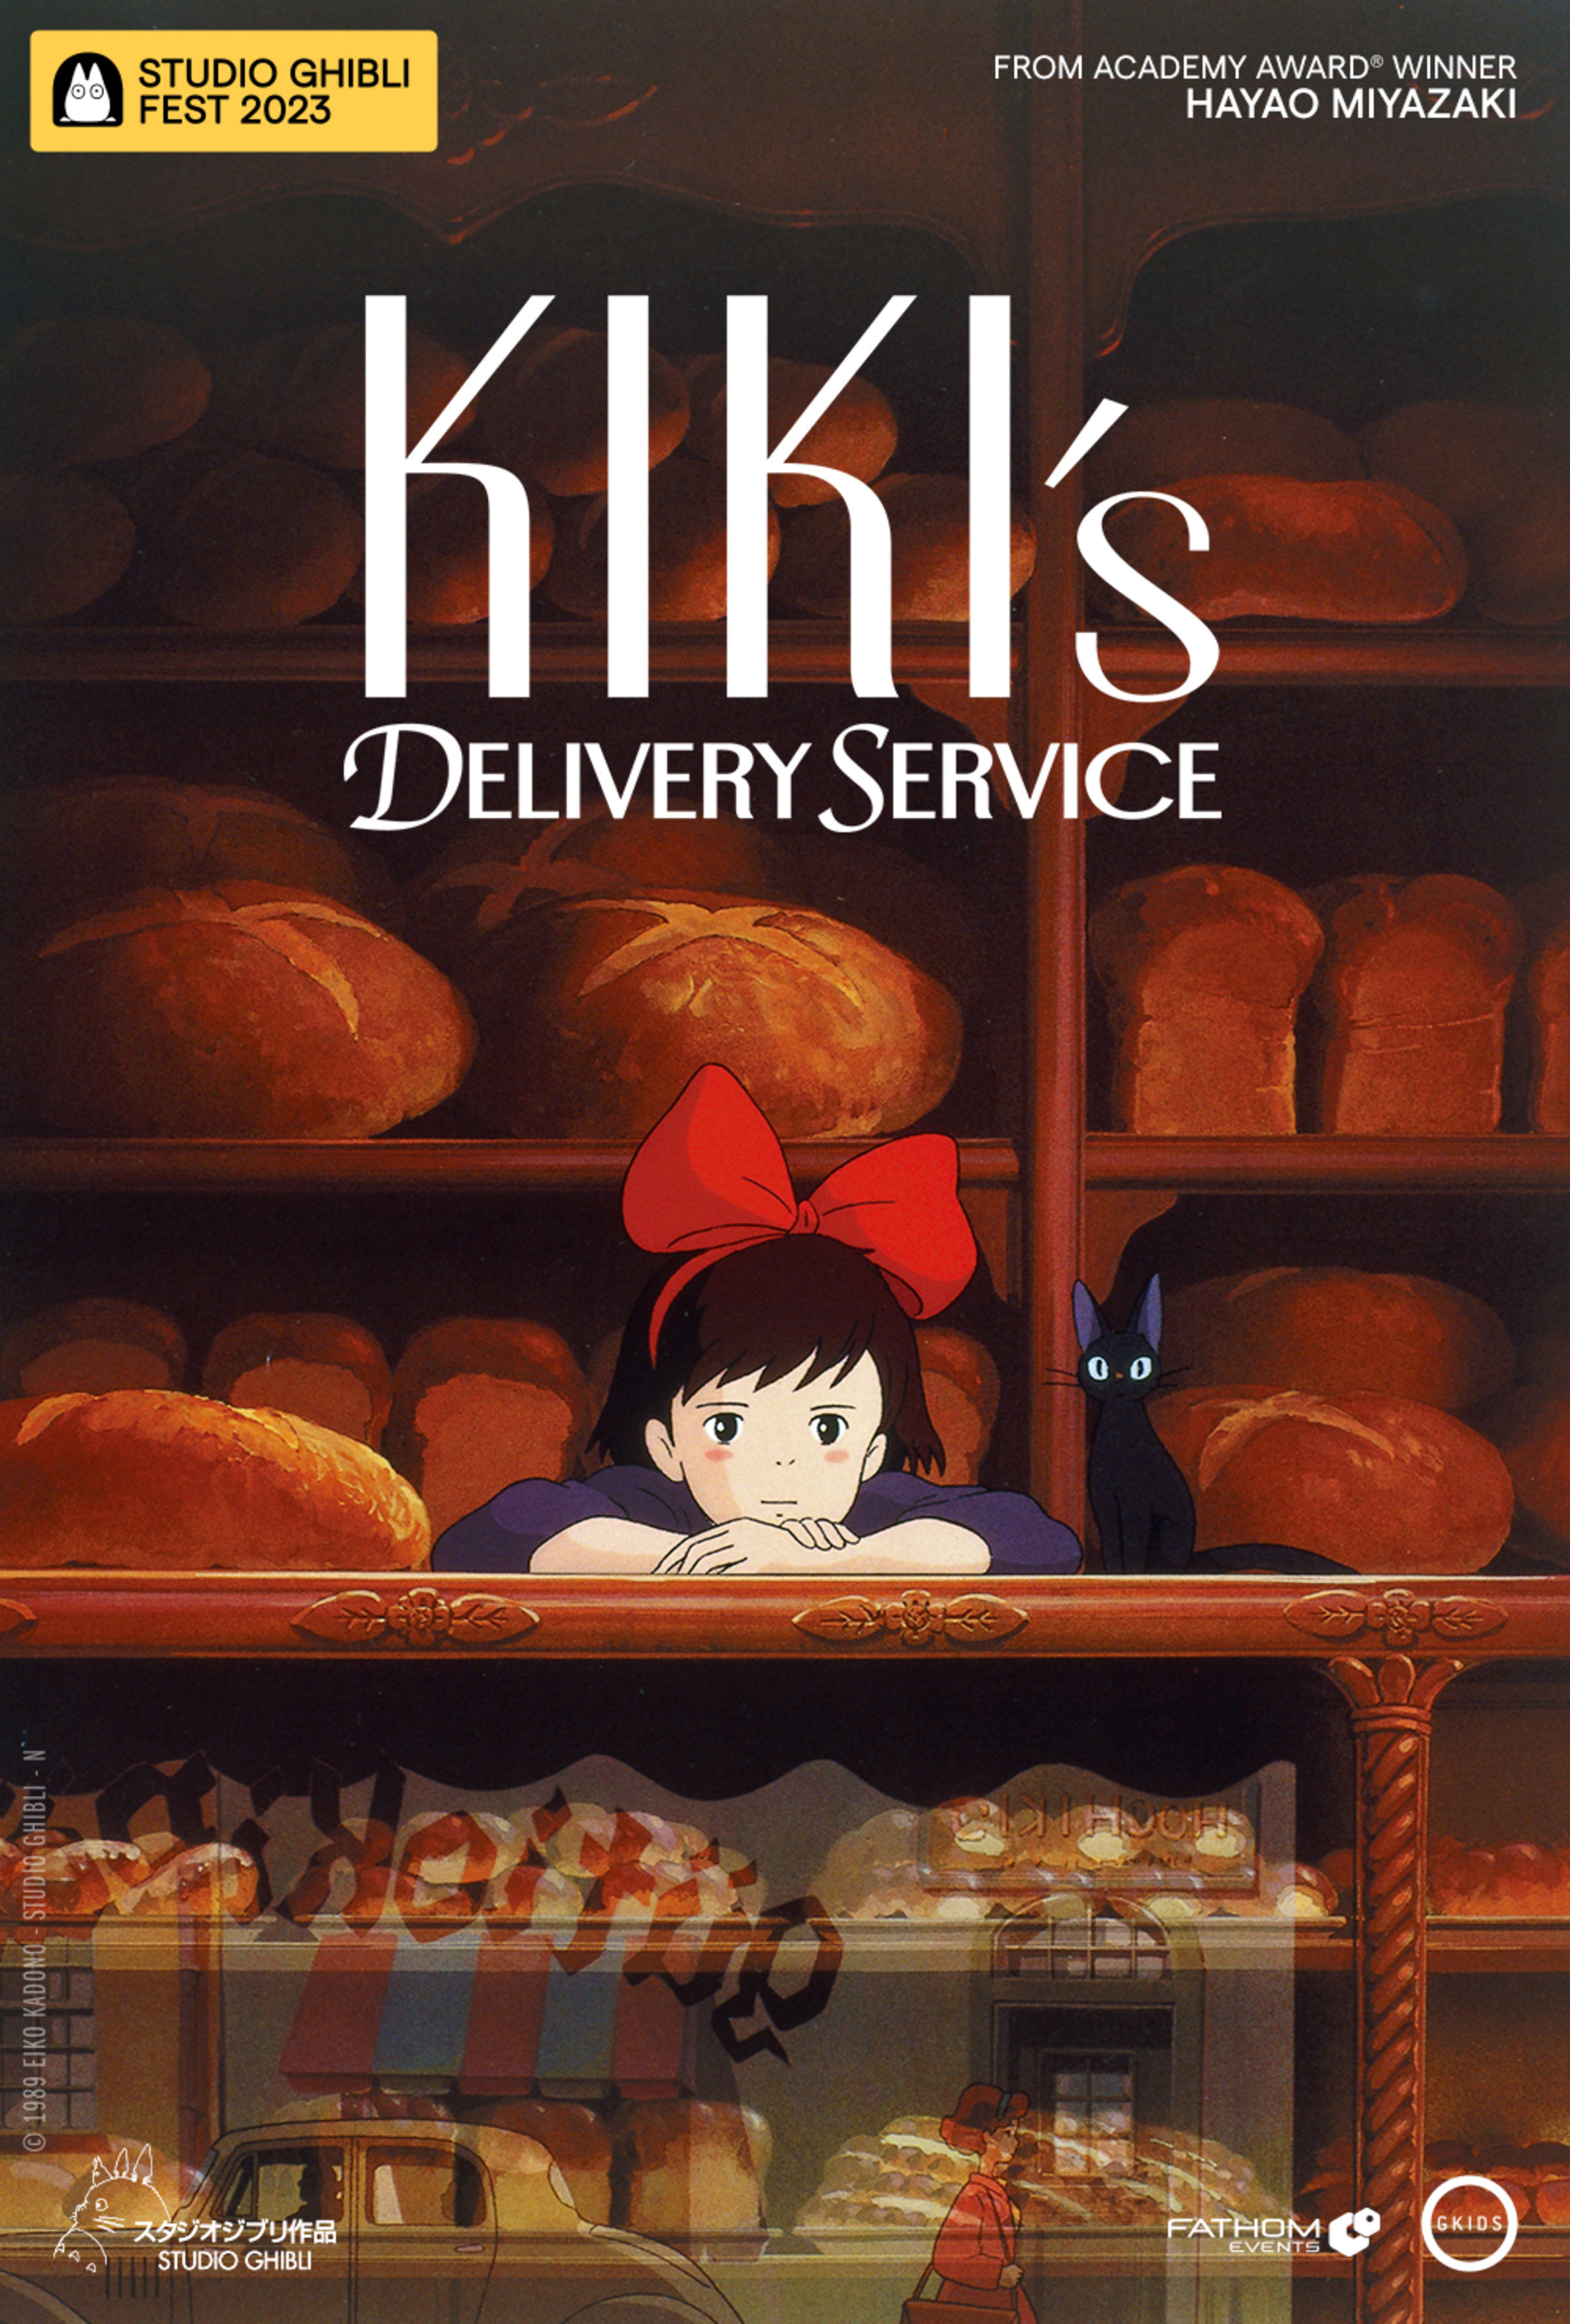 Kiki's Delivery Service' in Theaters June 11-14 - Rafu Shimpo